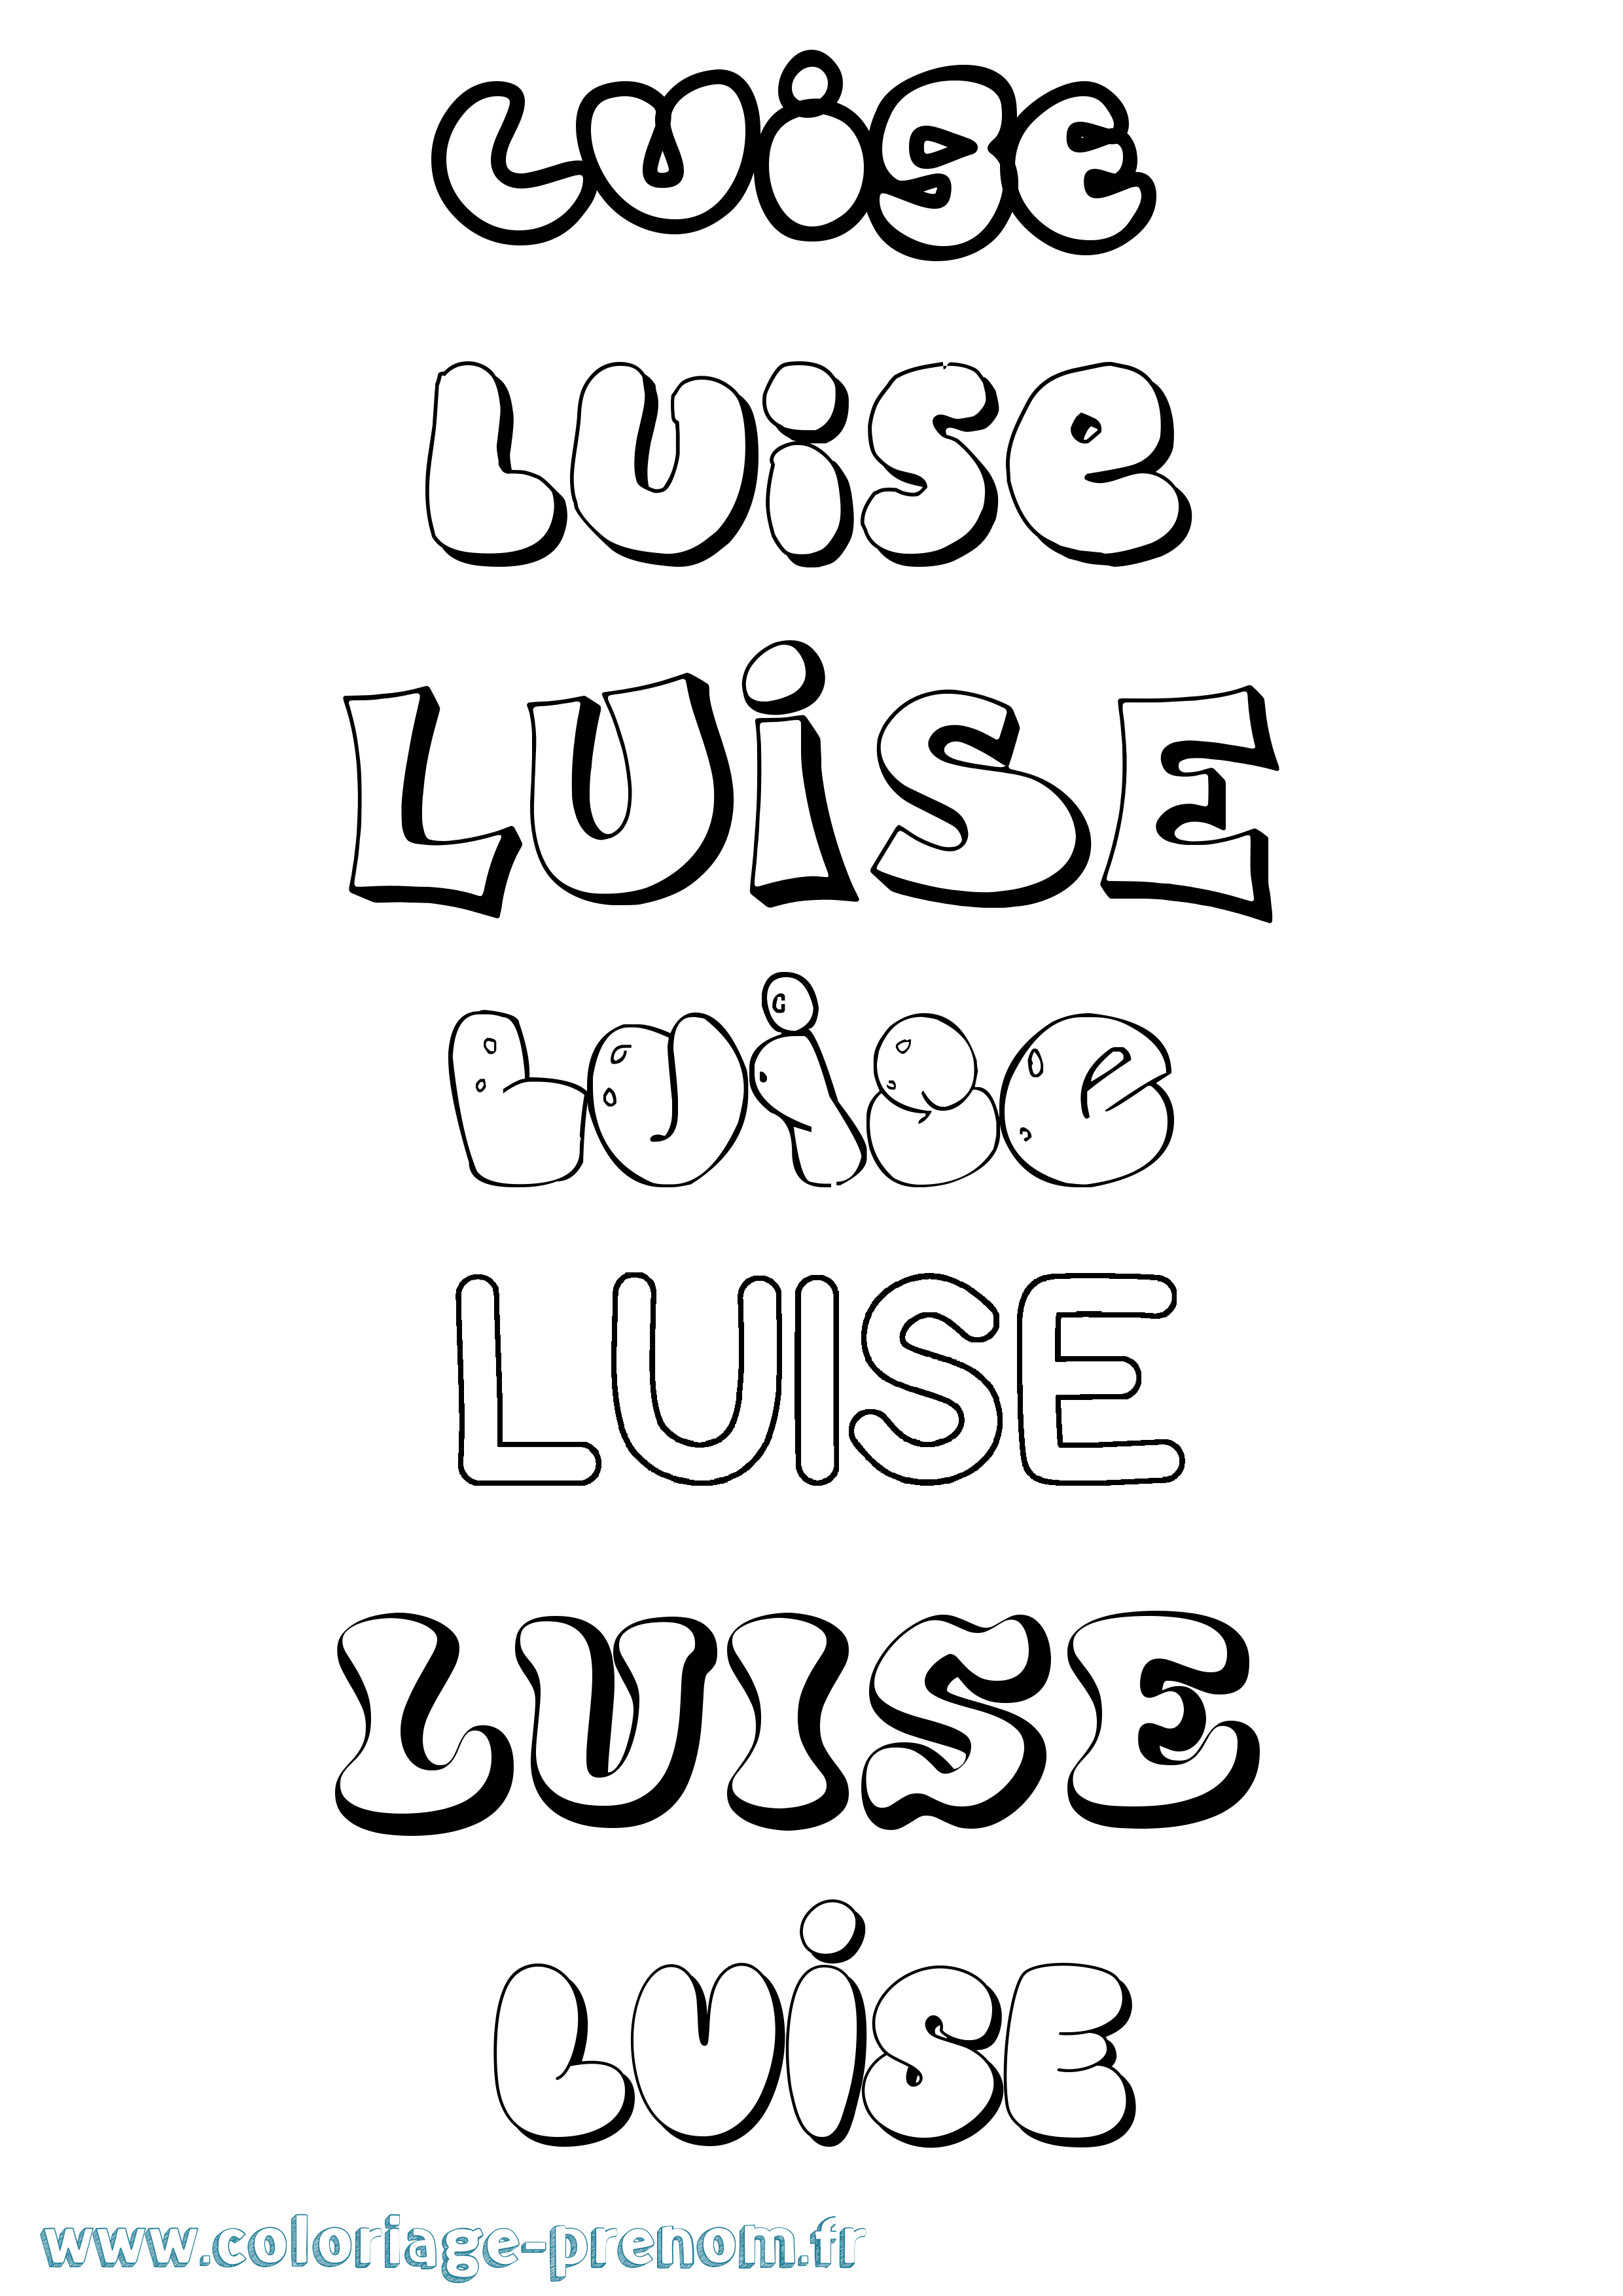 Coloriage prénom Luise Bubble